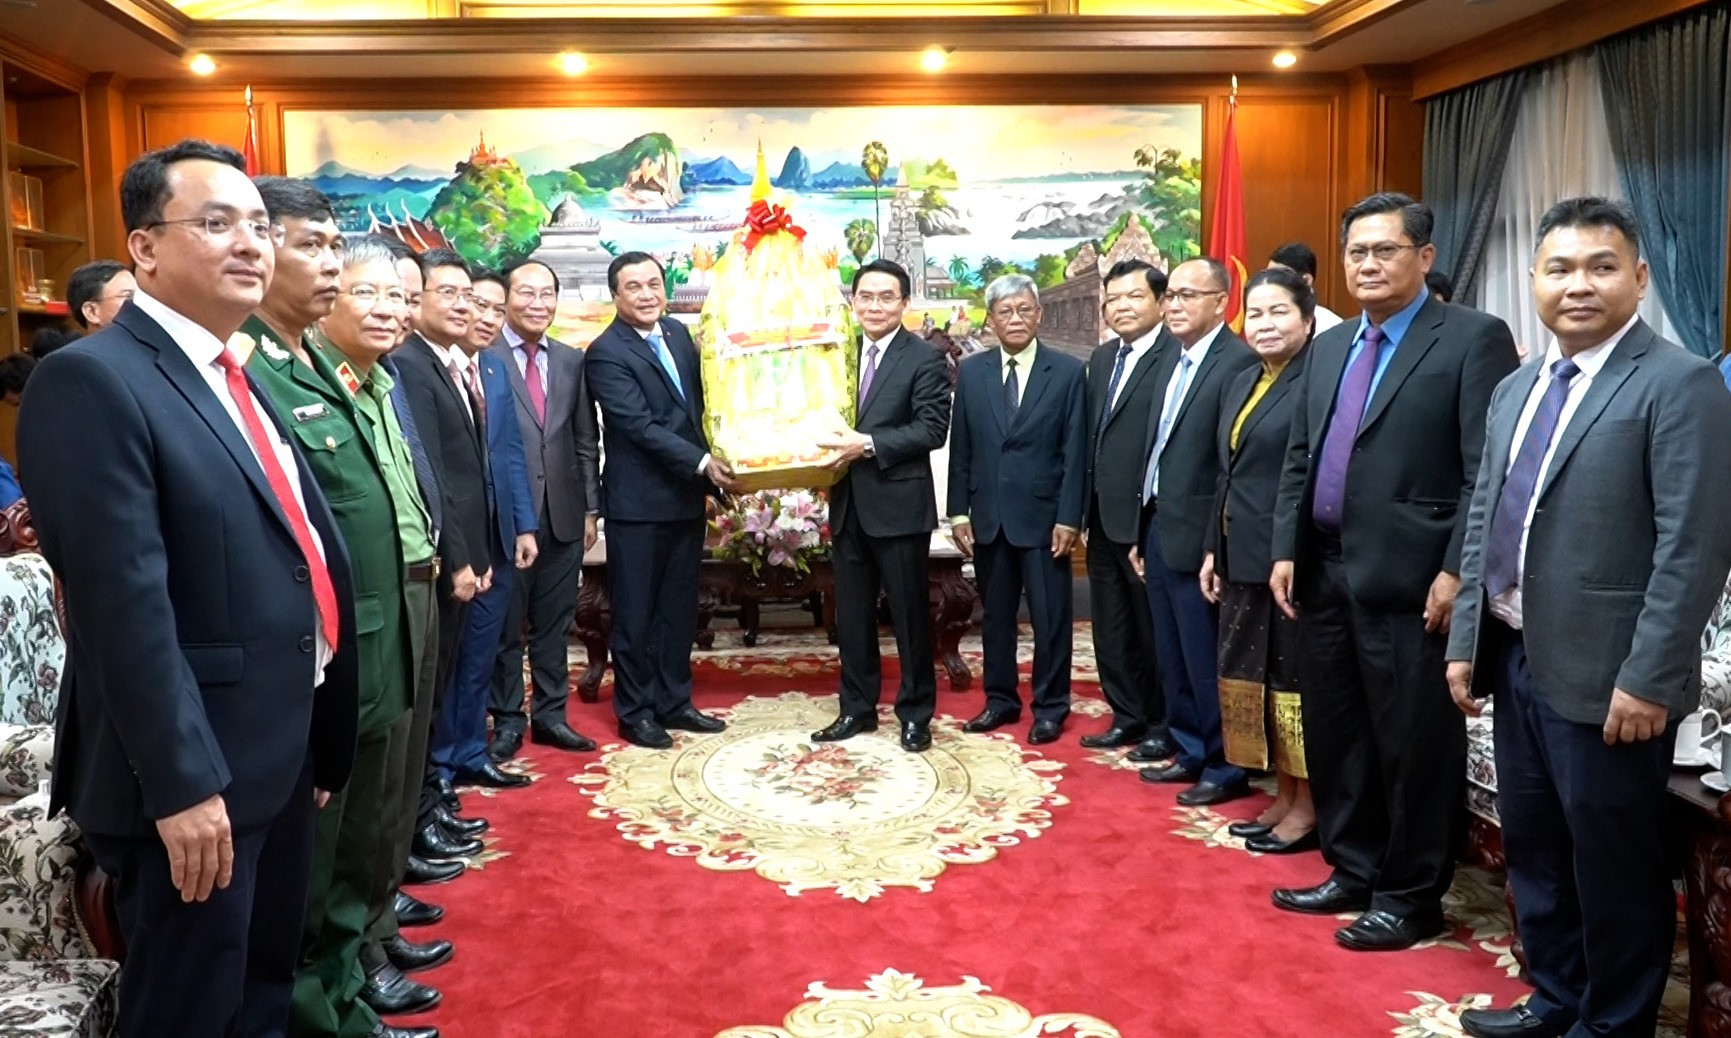 Đoàn cán bộ tỉnh Quảng Nam thăm chúc tết tỉnh Chămpasak. Ảnh: TRÍ QUANG